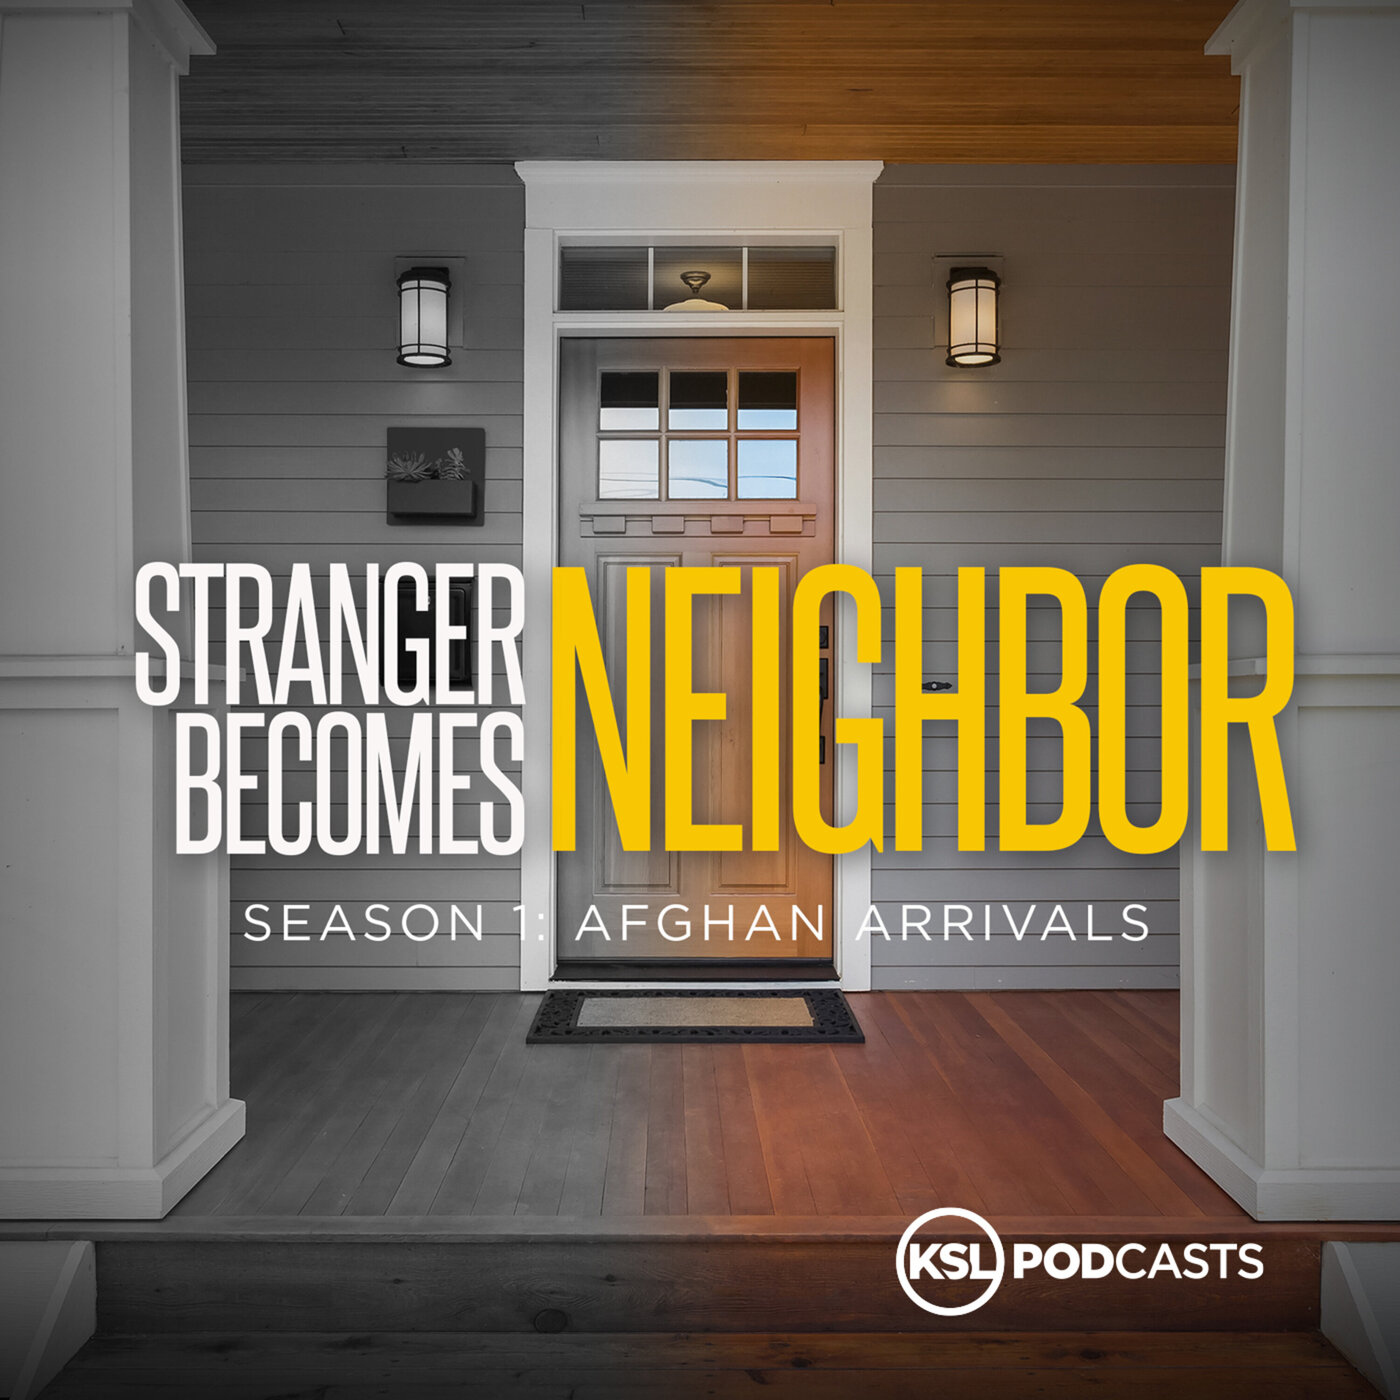 Stranger Becomes Neighbor podcast show image